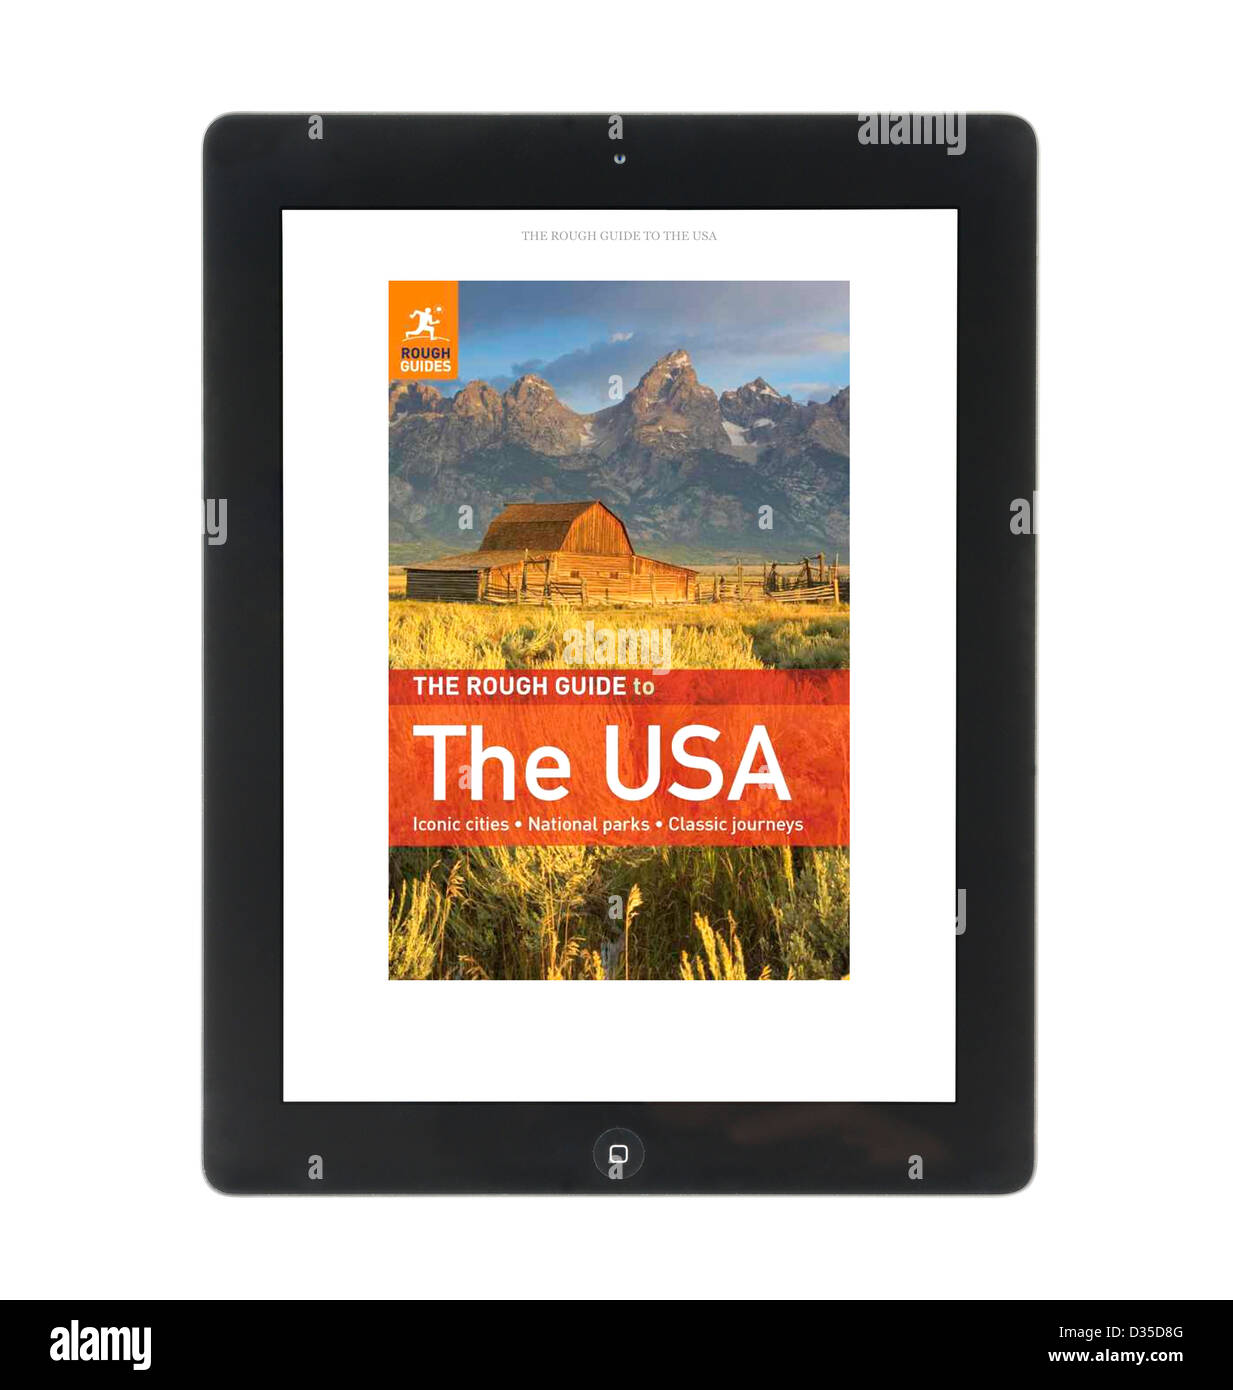 La lectura de un libro de viajes Rough Guide con el Kindle app en un Apple iPad 4 pantalla retina genration tablet pc Foto de stock